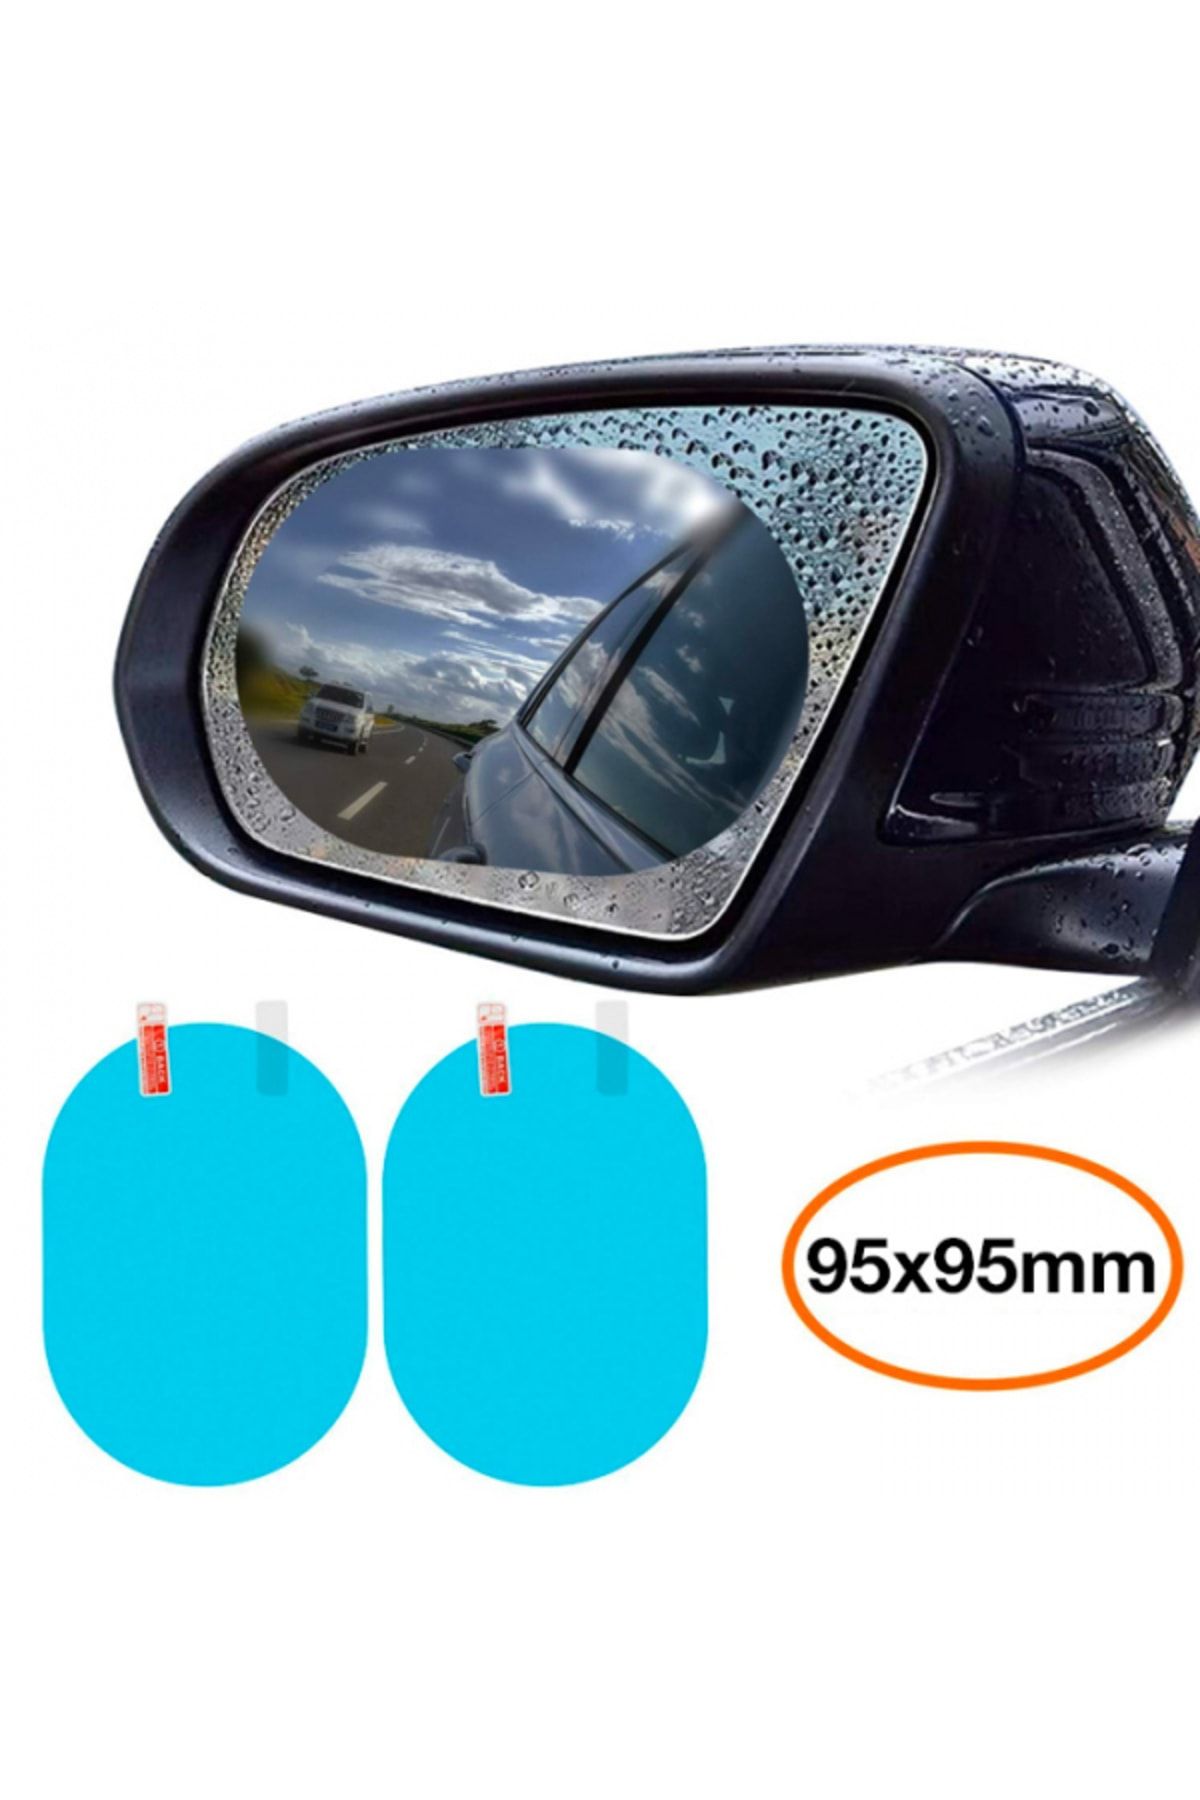 BASEUS ORJİNAL Baseus 95x95mm Araç Oto Yan Dikiz Ayna Yağmur Su Kaydırıcı Sis Önleyici Film 2 Adet Set